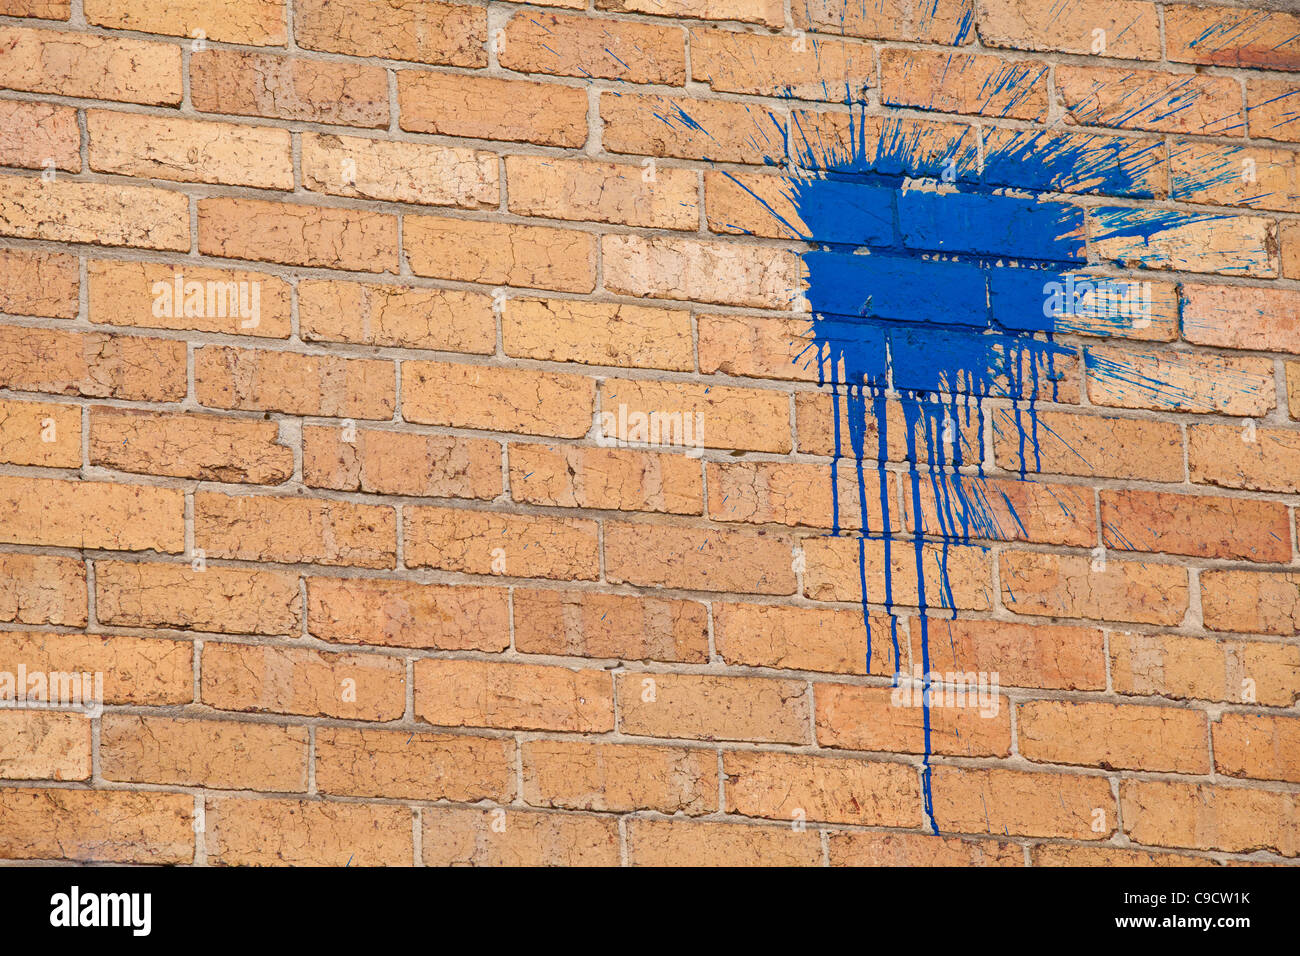 bright blue paint splat graffiti on a brick wall Stock Photo